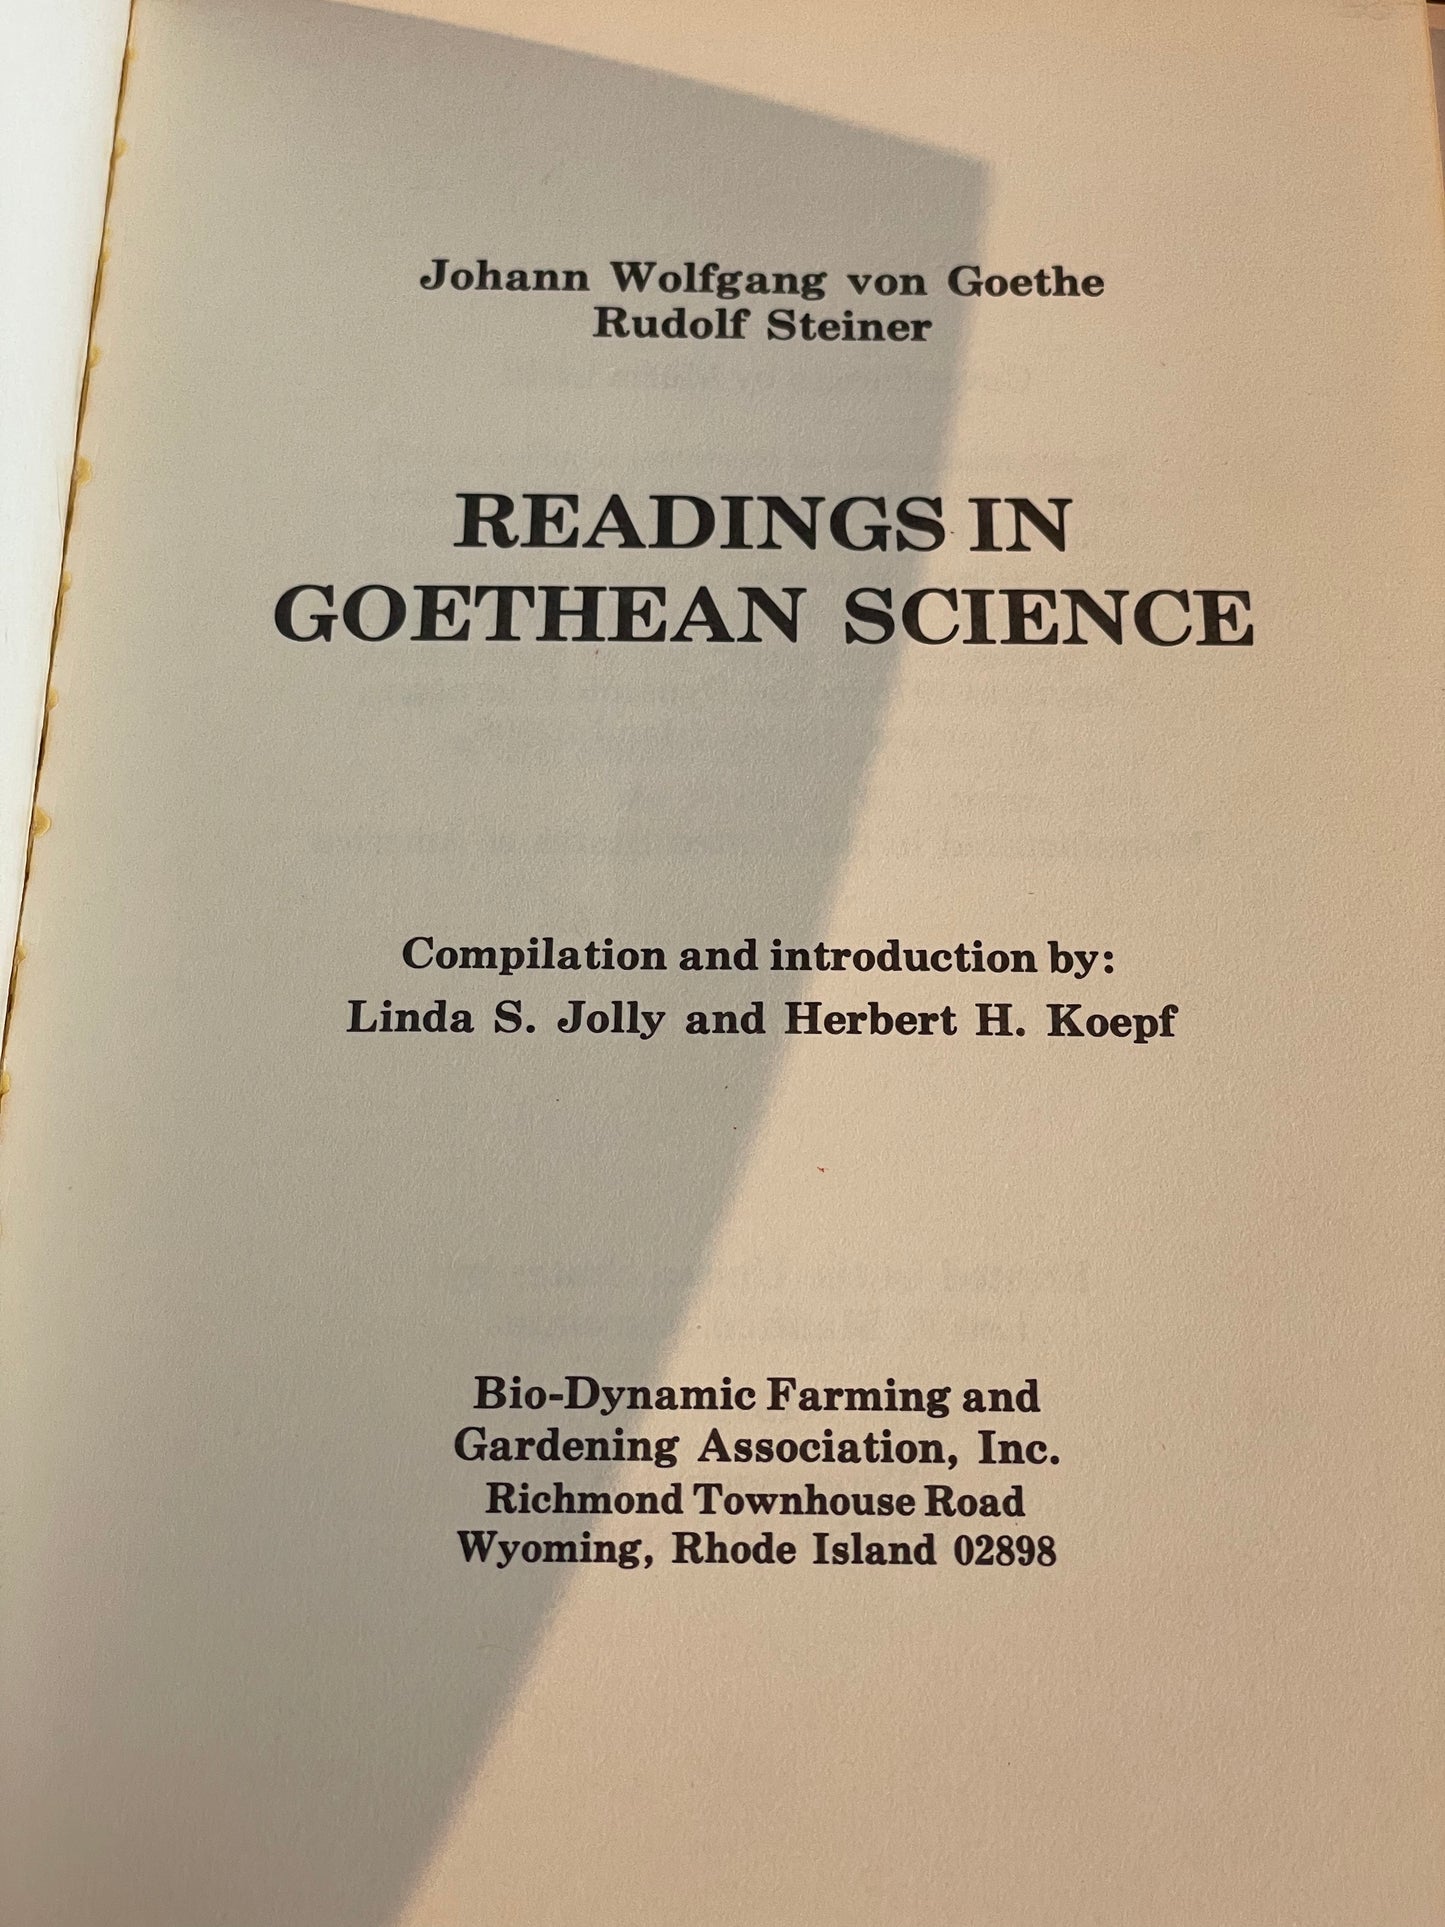 Readings in Goethean Science